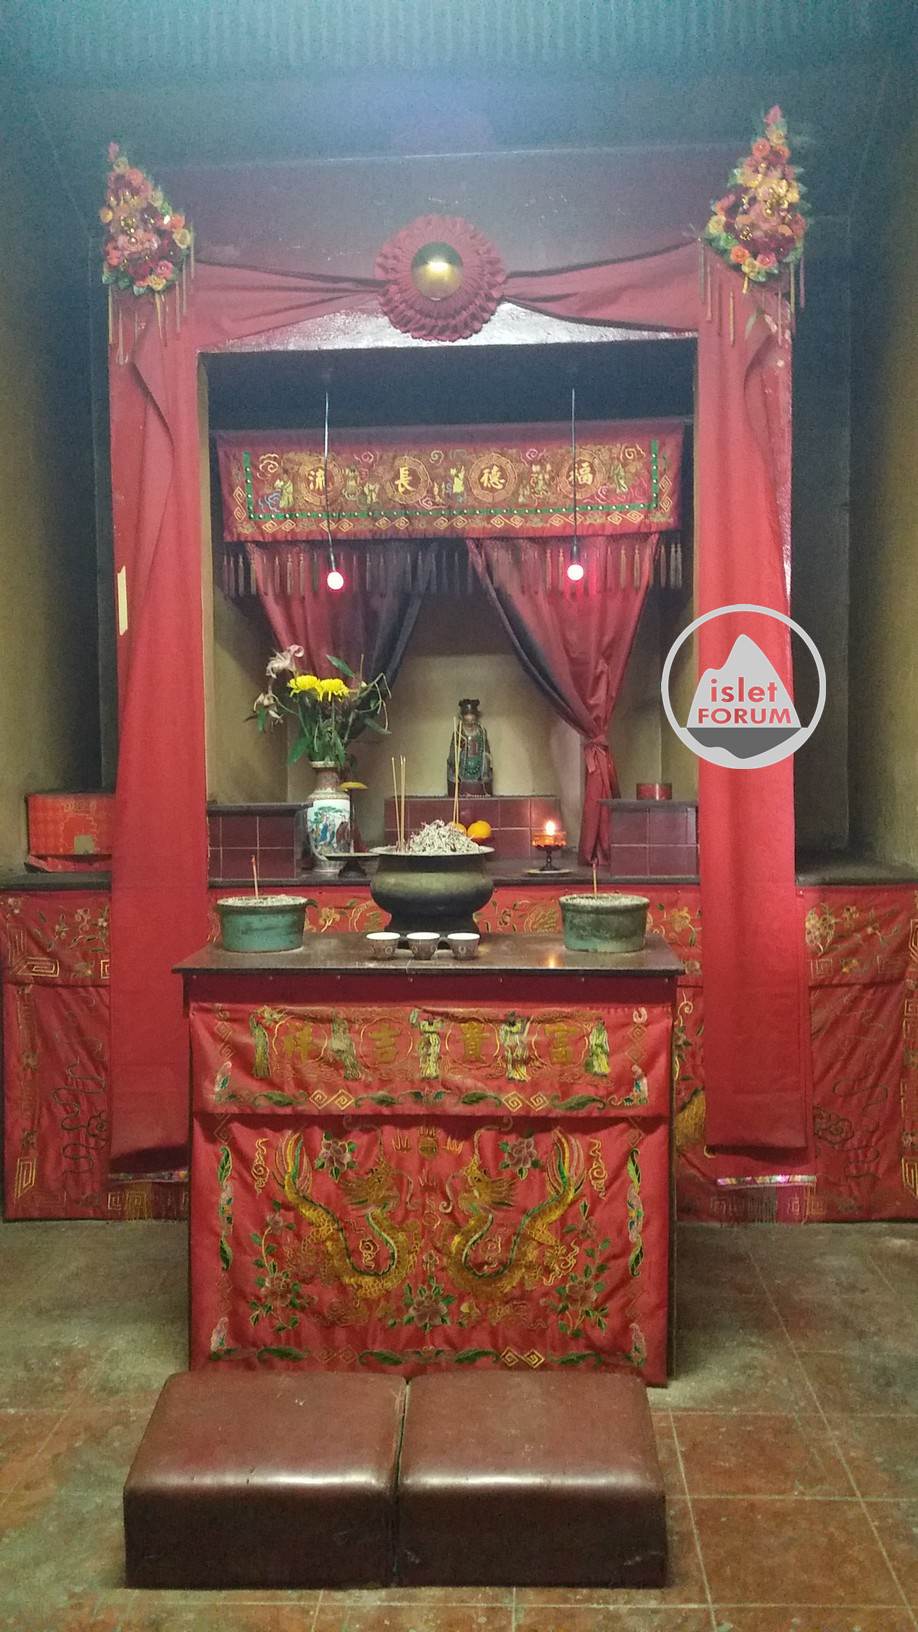 龍鼓灘天后廟lung kwu tan tin hau temple (12).jpg